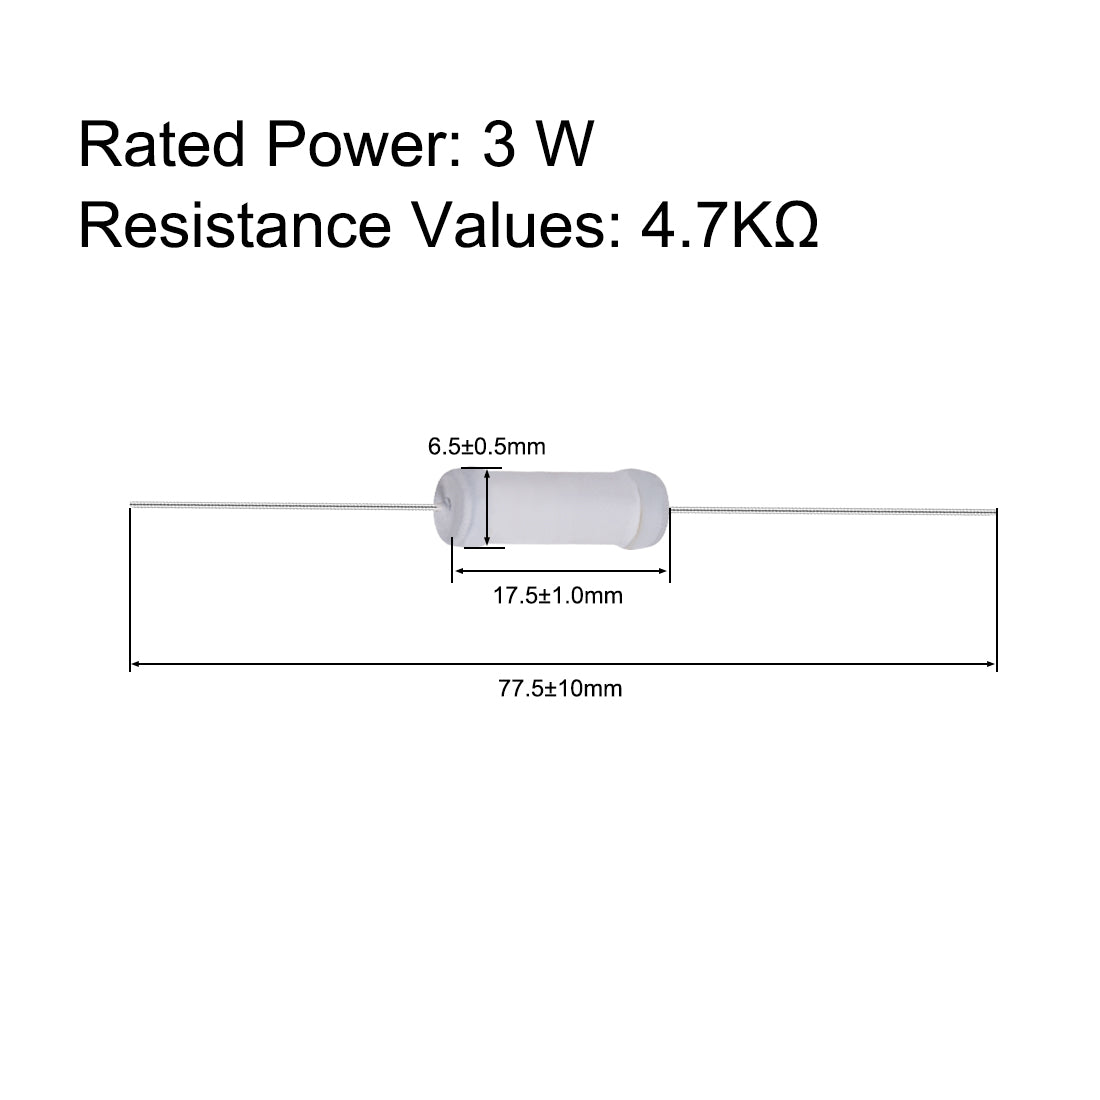 uxcell Uxcell 20pcs 3W 3 Watt Metal Oxide Film Resistor Lead 4.7K Ohm ±5% Tolerance